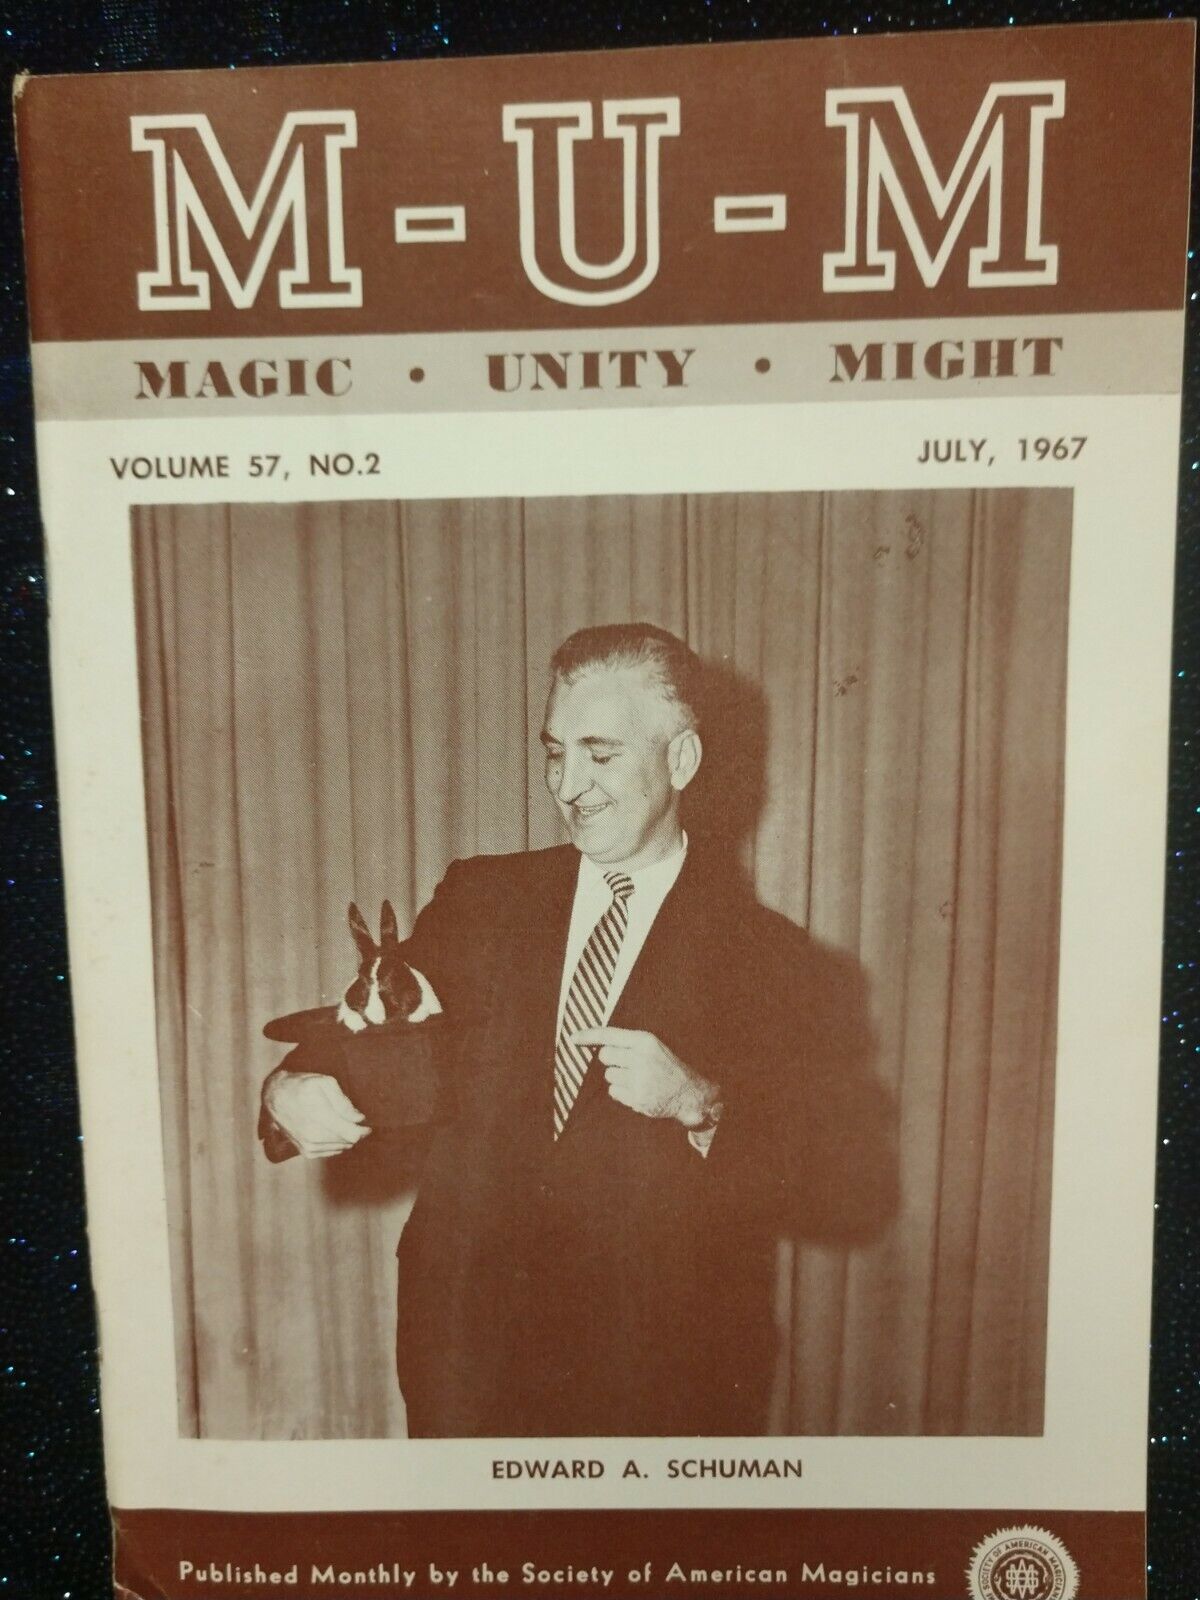 Vintage Edward A. Schuman Issue MUM Magazine 1967 Vol. 57 No. 2